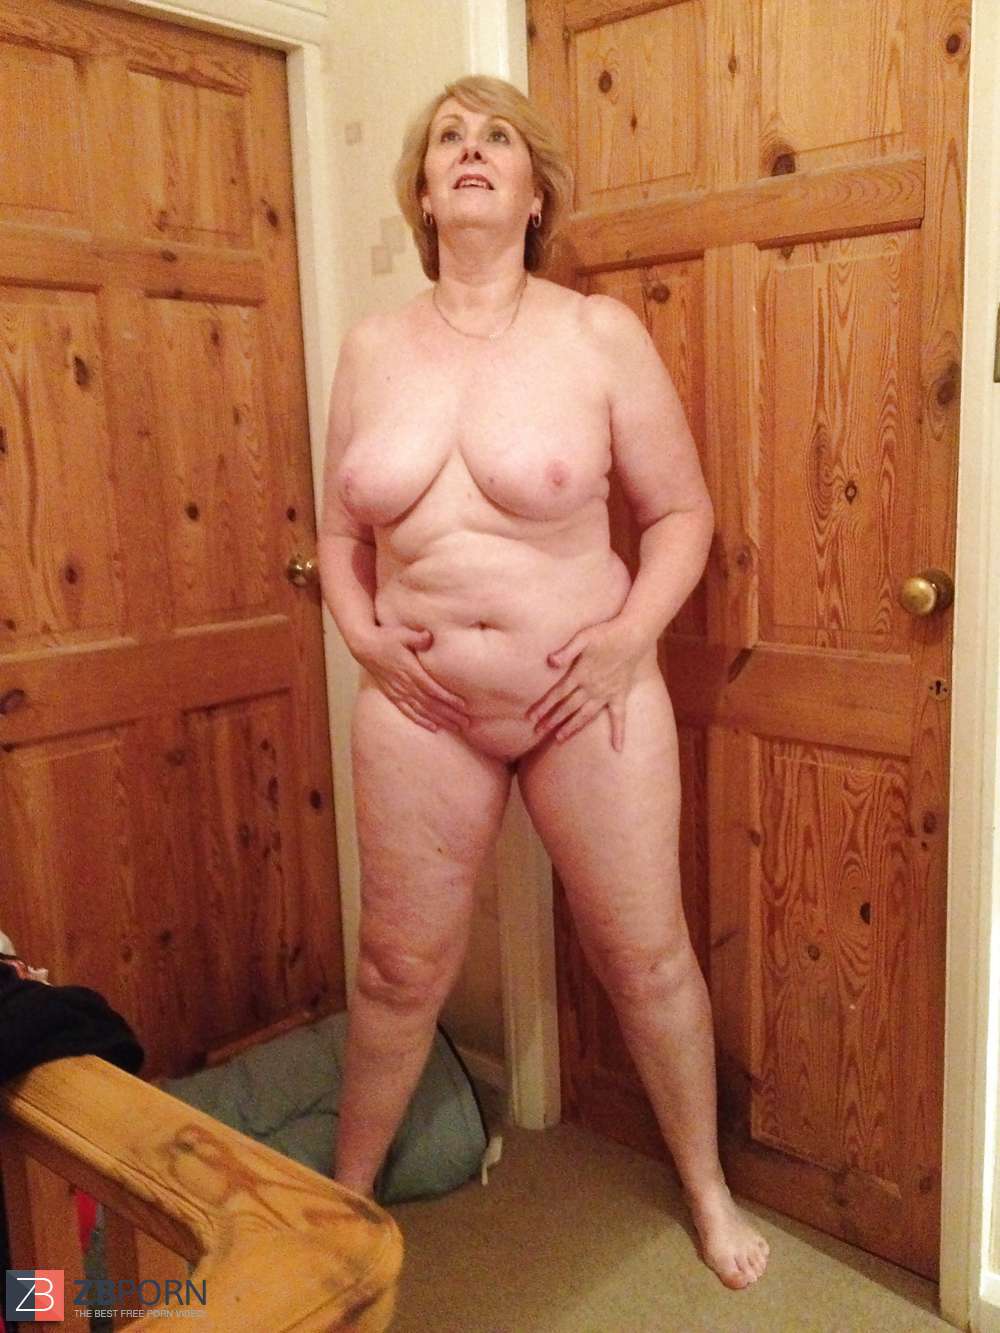 Karen Mature Granny Bathroom Zb Porn